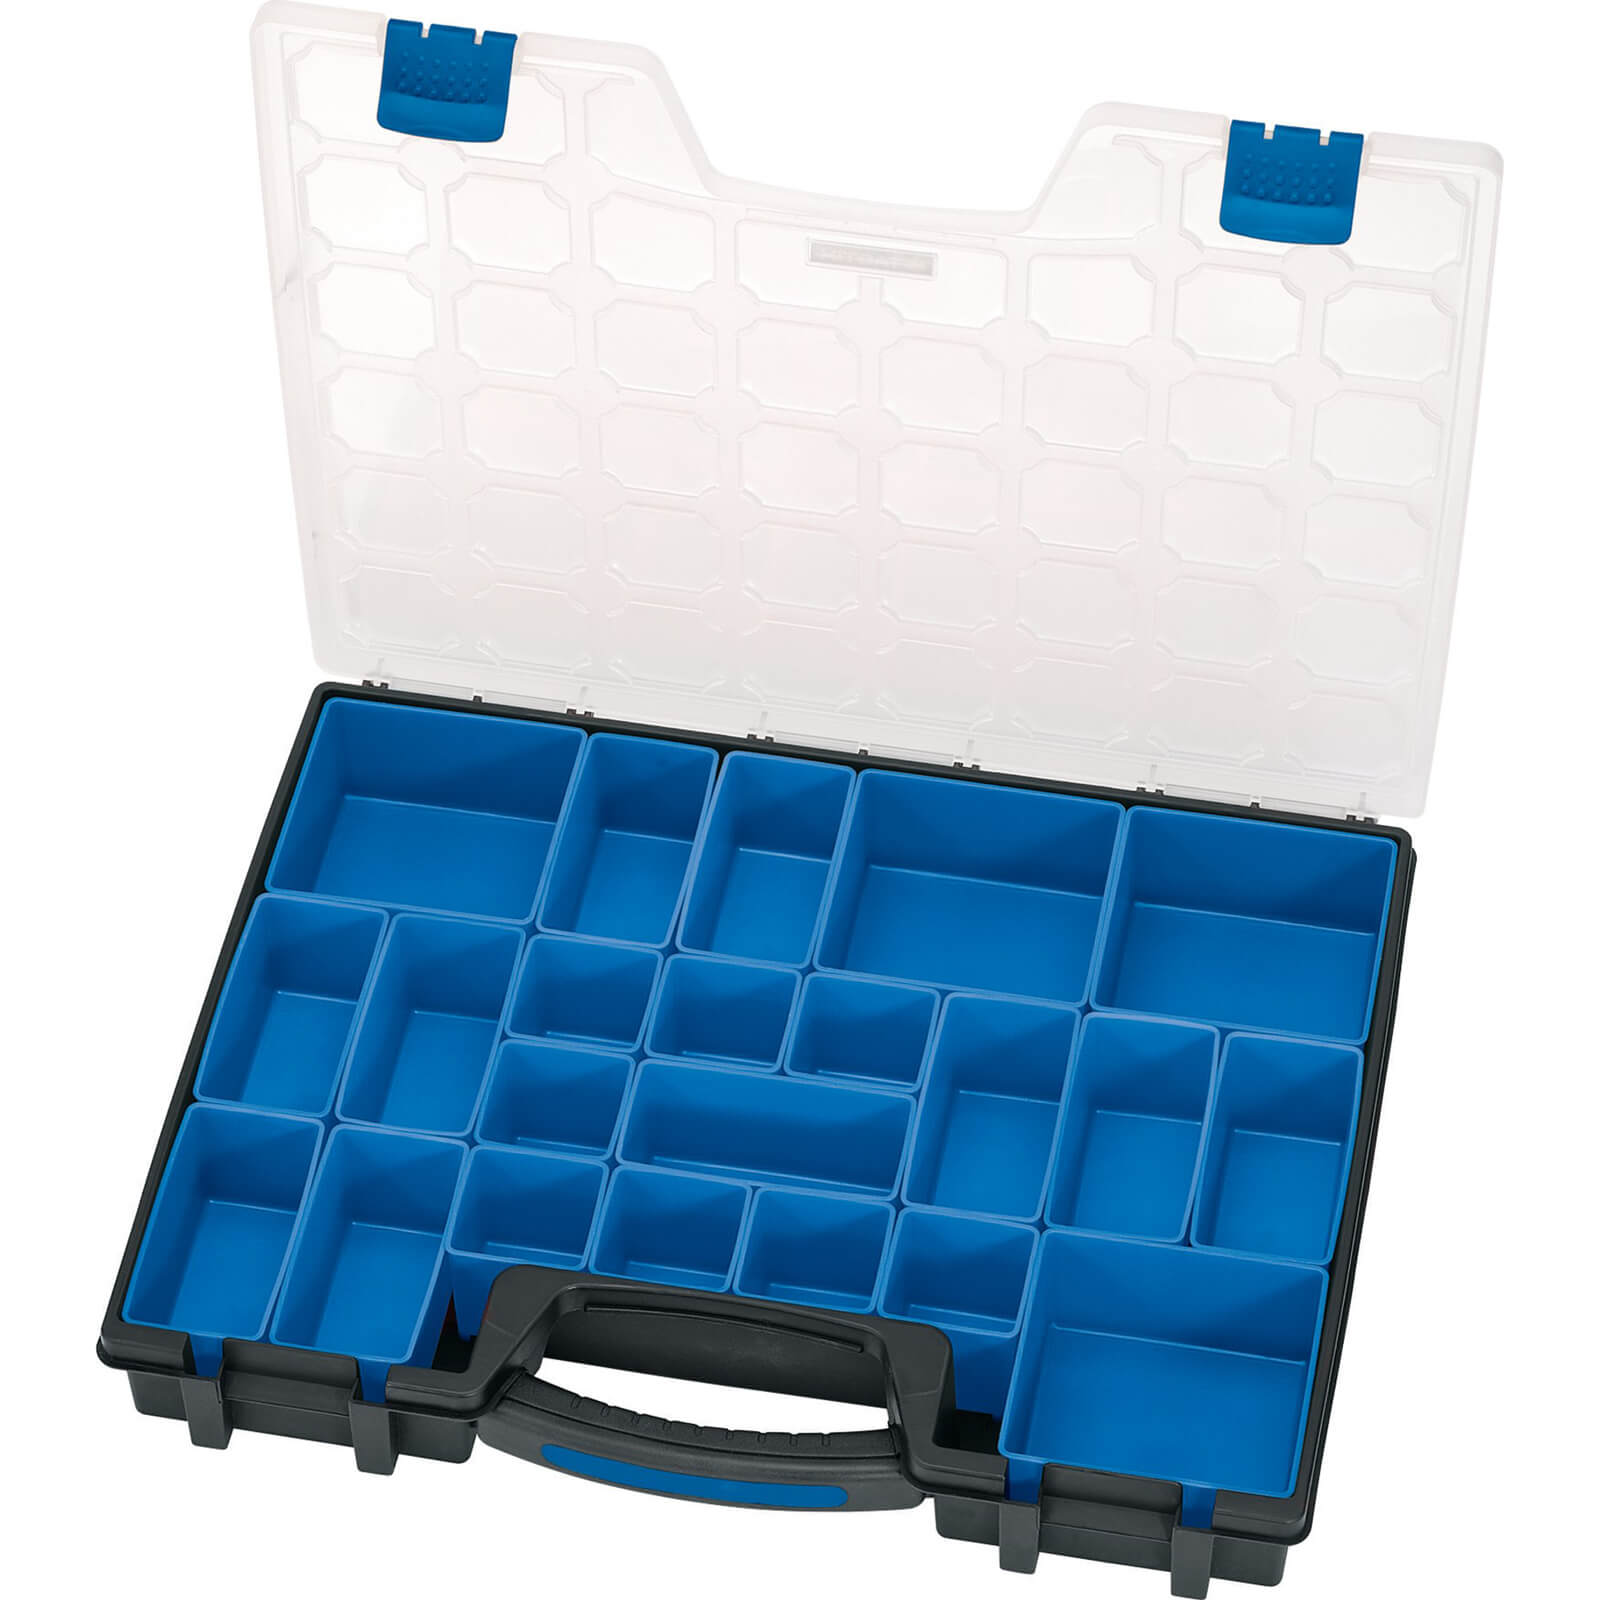 Image of Draper 22 Compartment Plastic Organiser